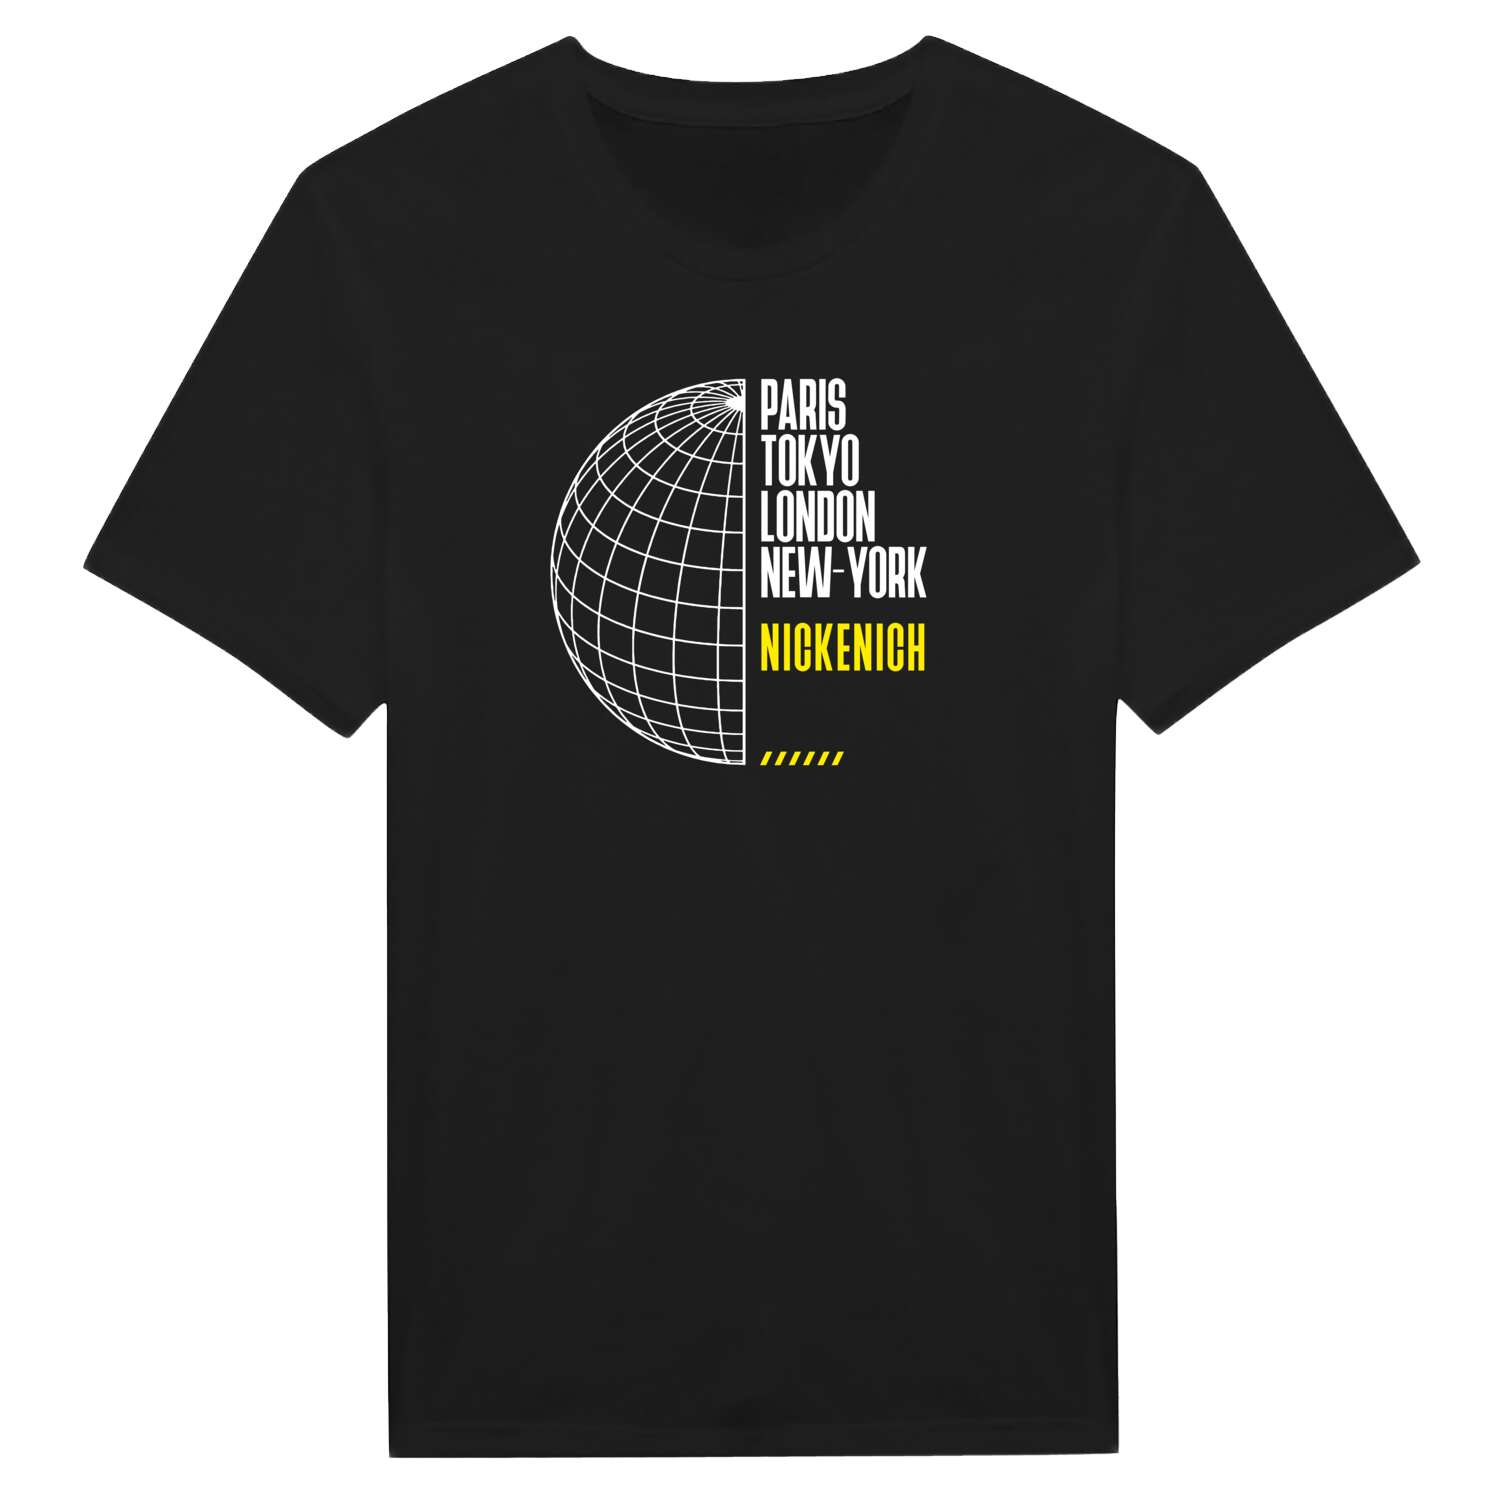 Nickenich T-Shirt »Paris Tokyo London«